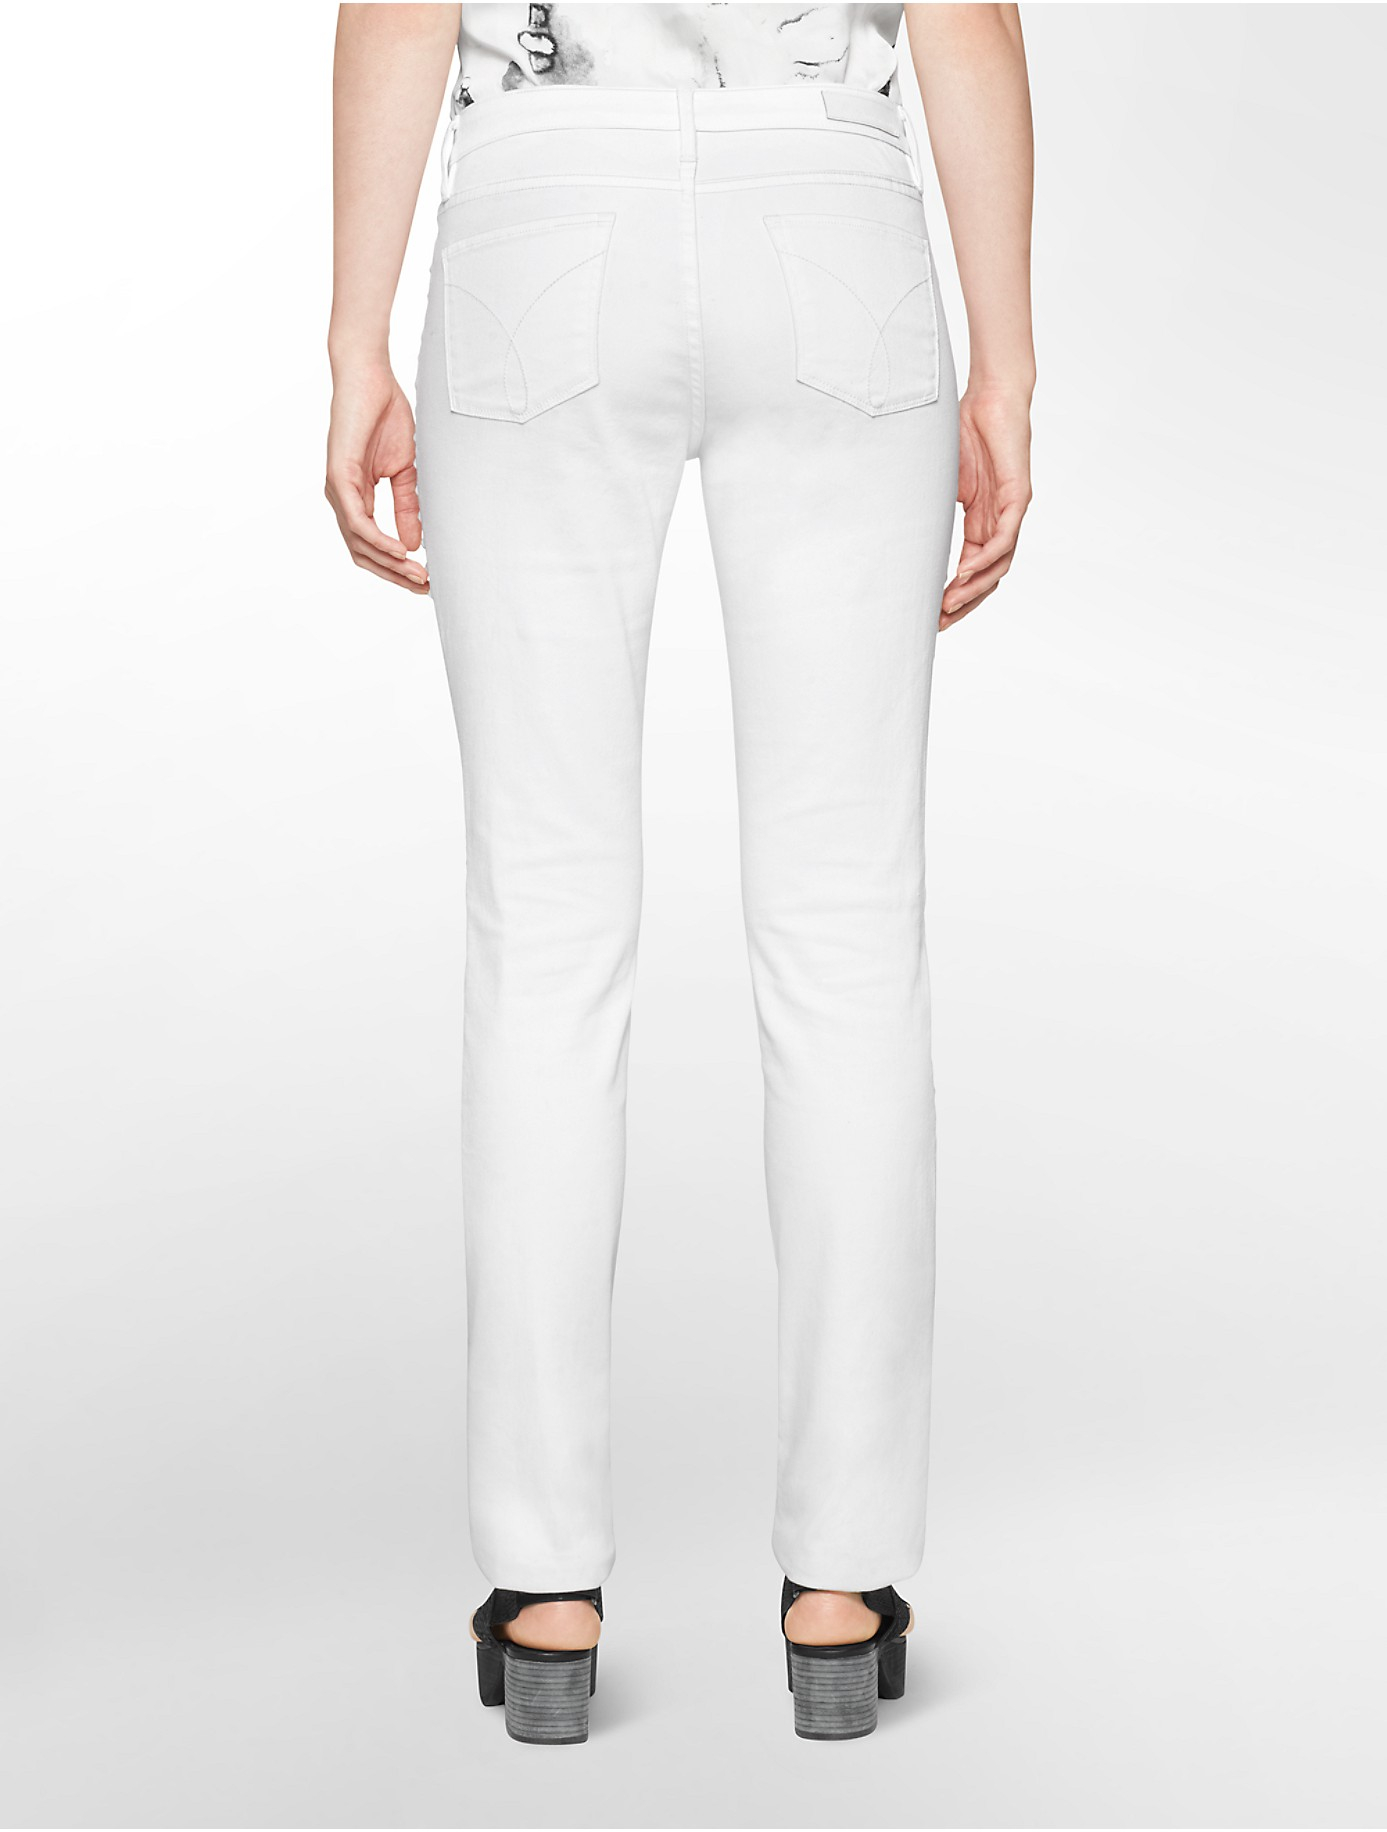 Calvin klein Jeans Ultimate Skinny Side Stripe White Wash Jeans in ...